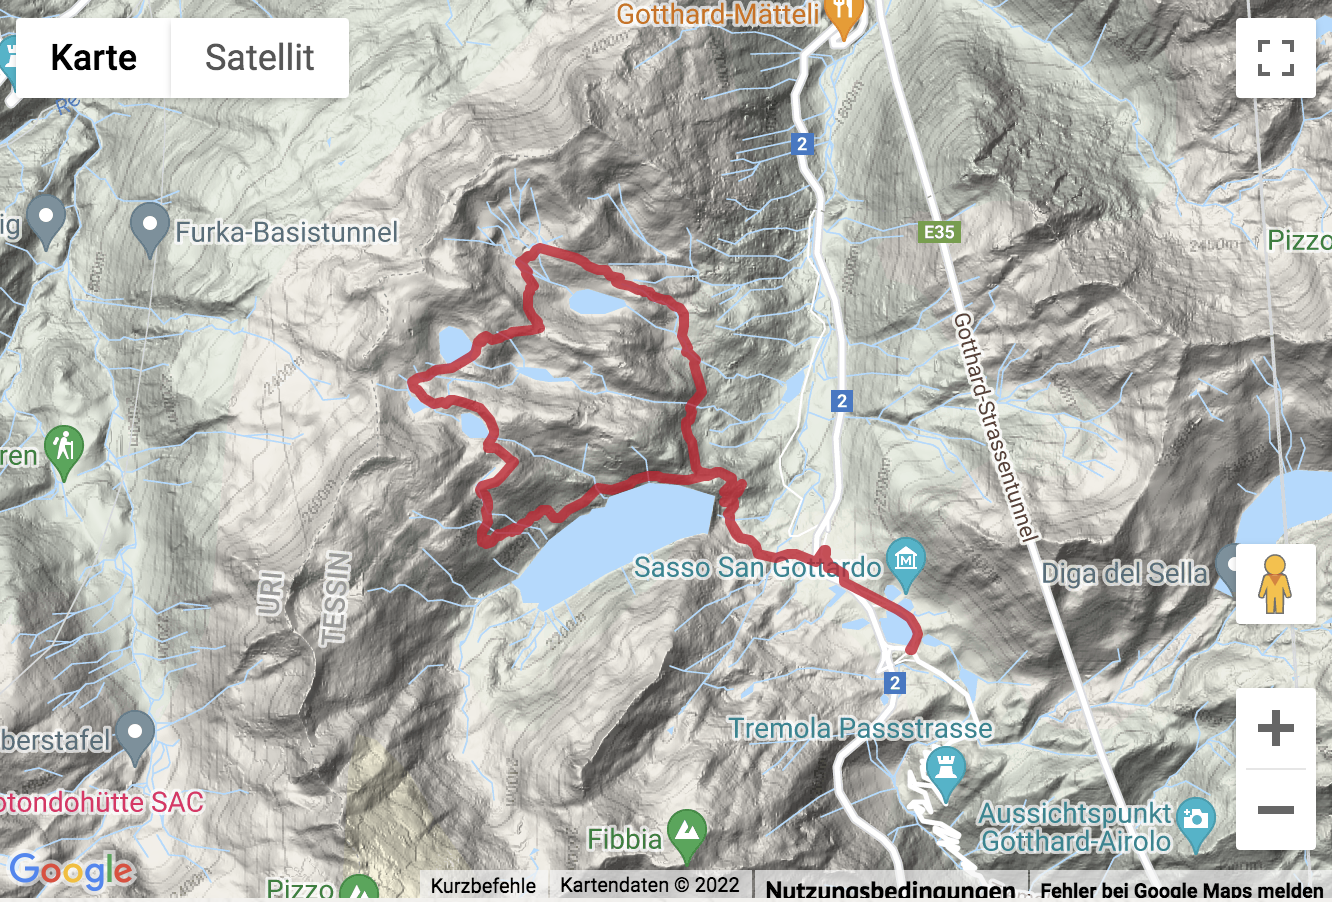 Carte de situation avec l'itinéraire pour la Randonnée aux cinq lacs dans la région du col du Gothard